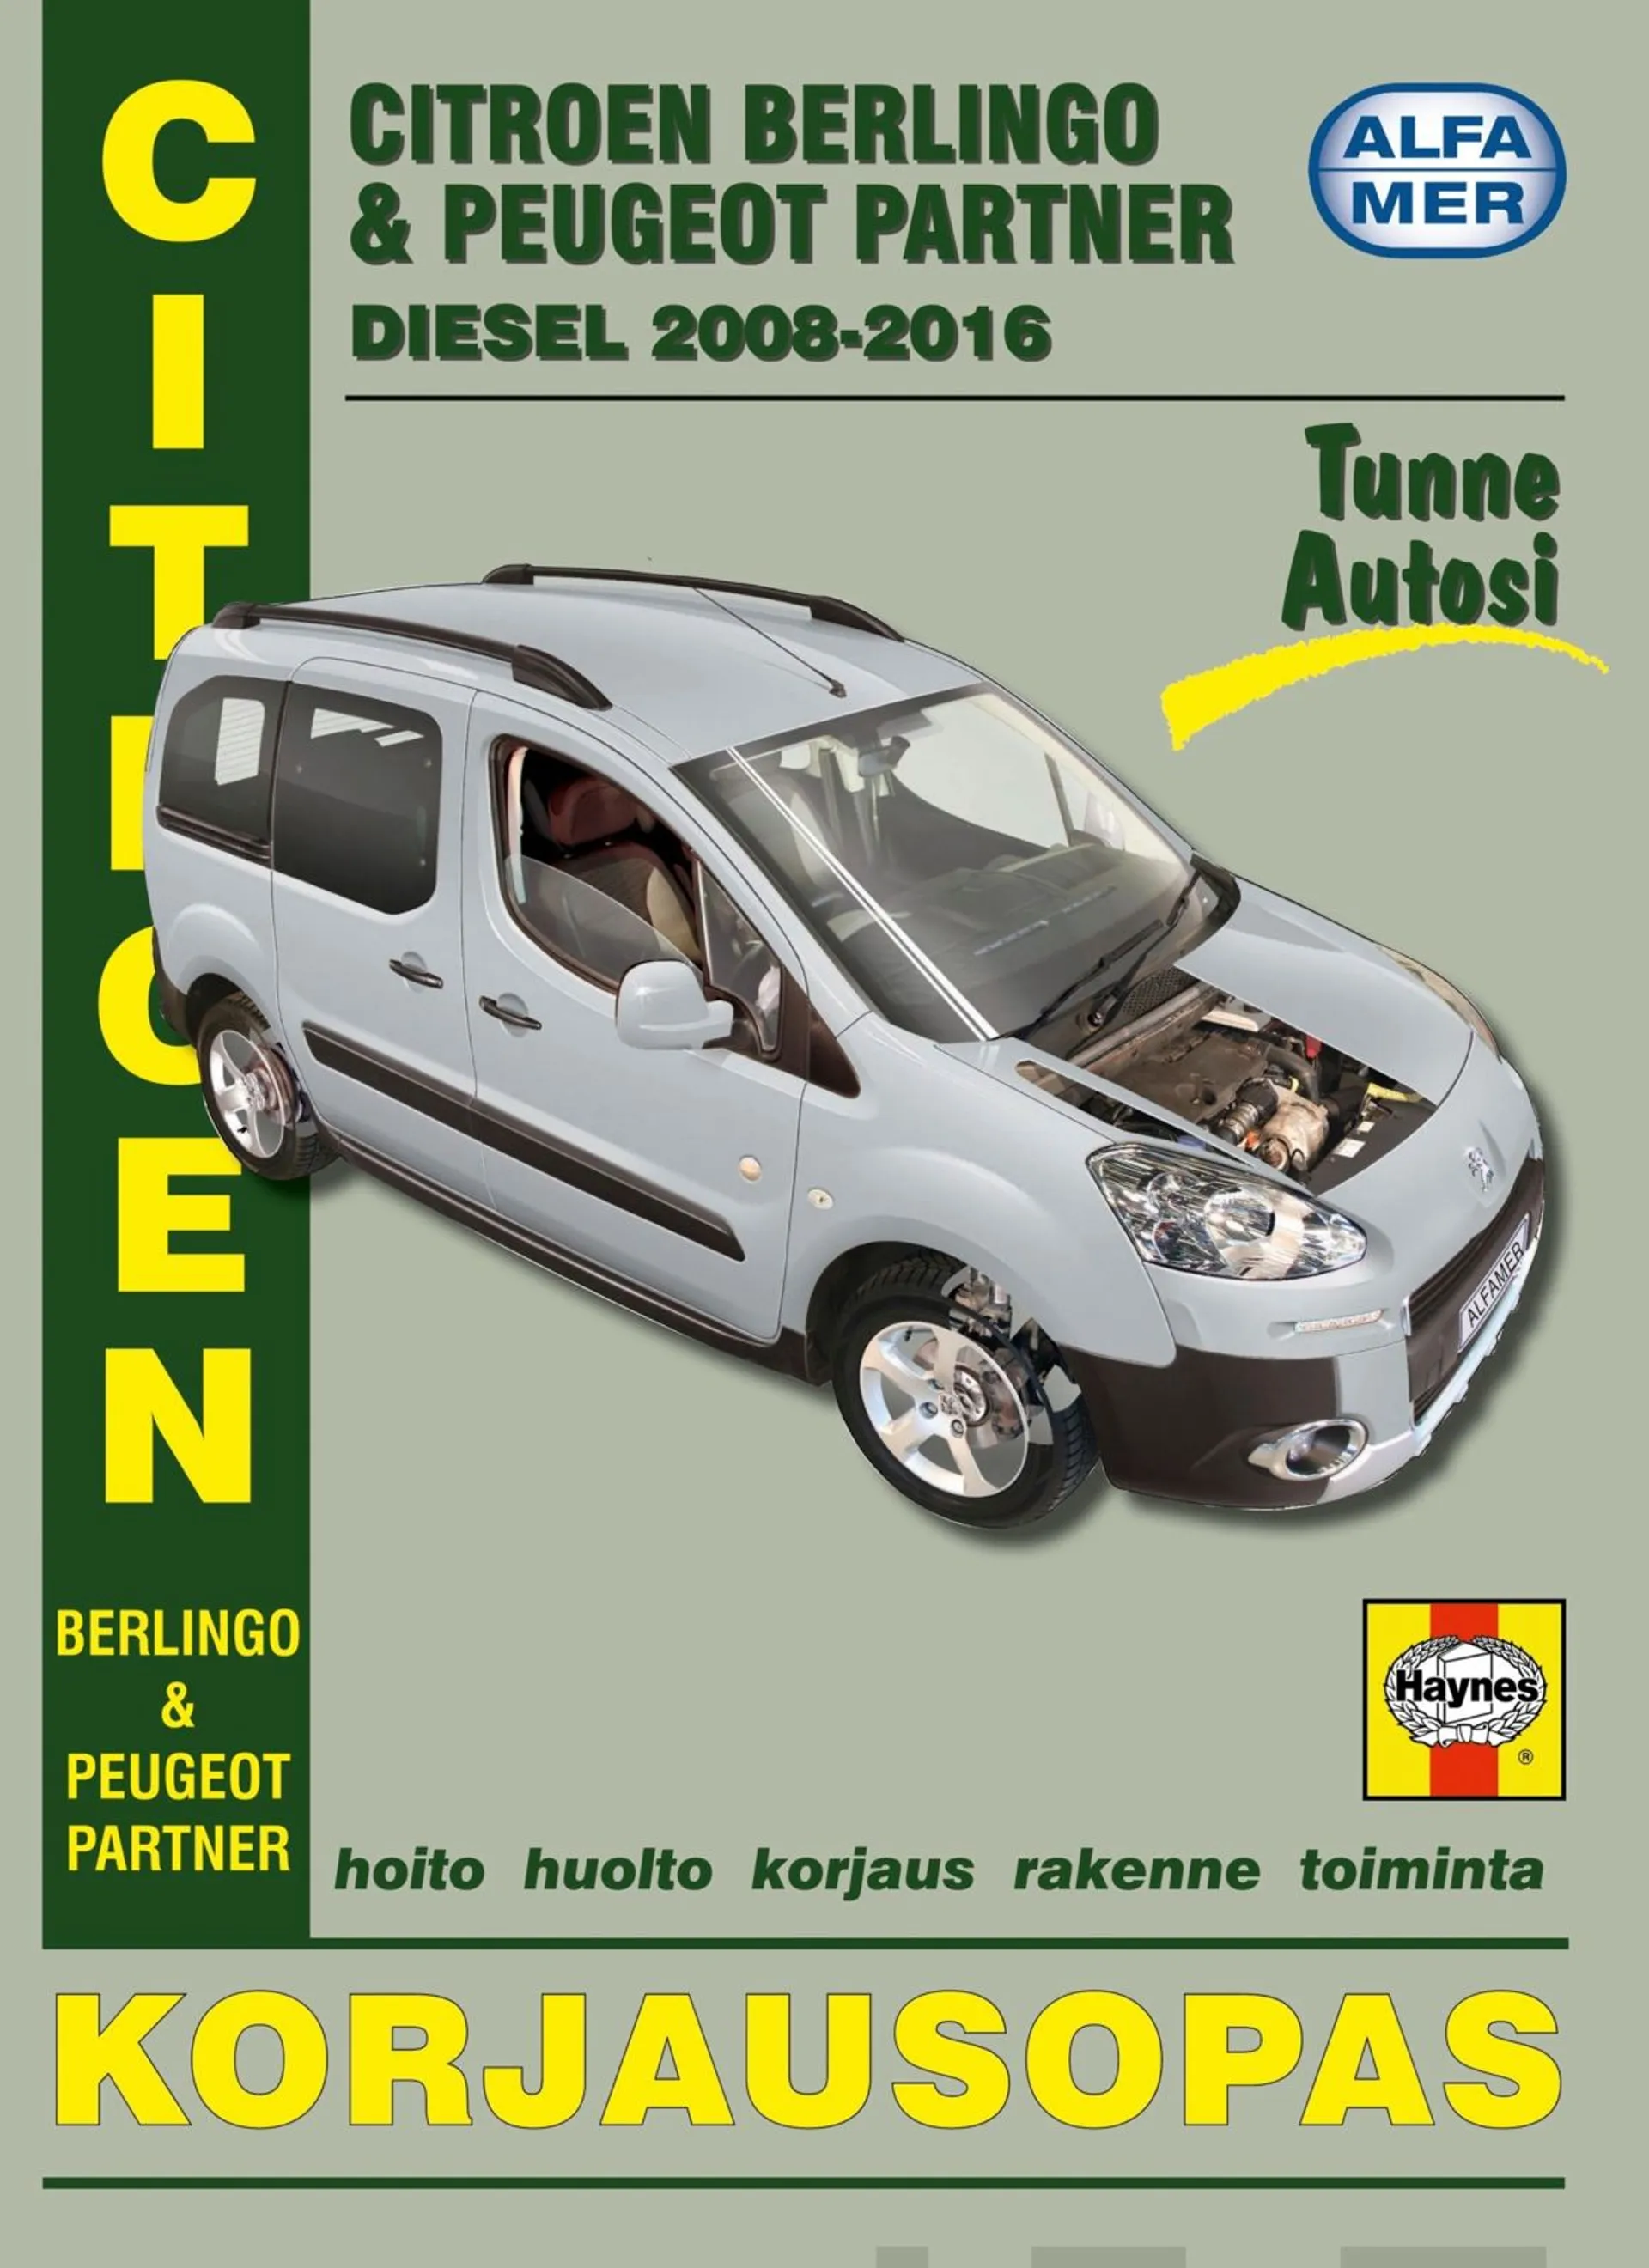 Citroen Berlingo & Peugeot Partner diesel 2008-2016